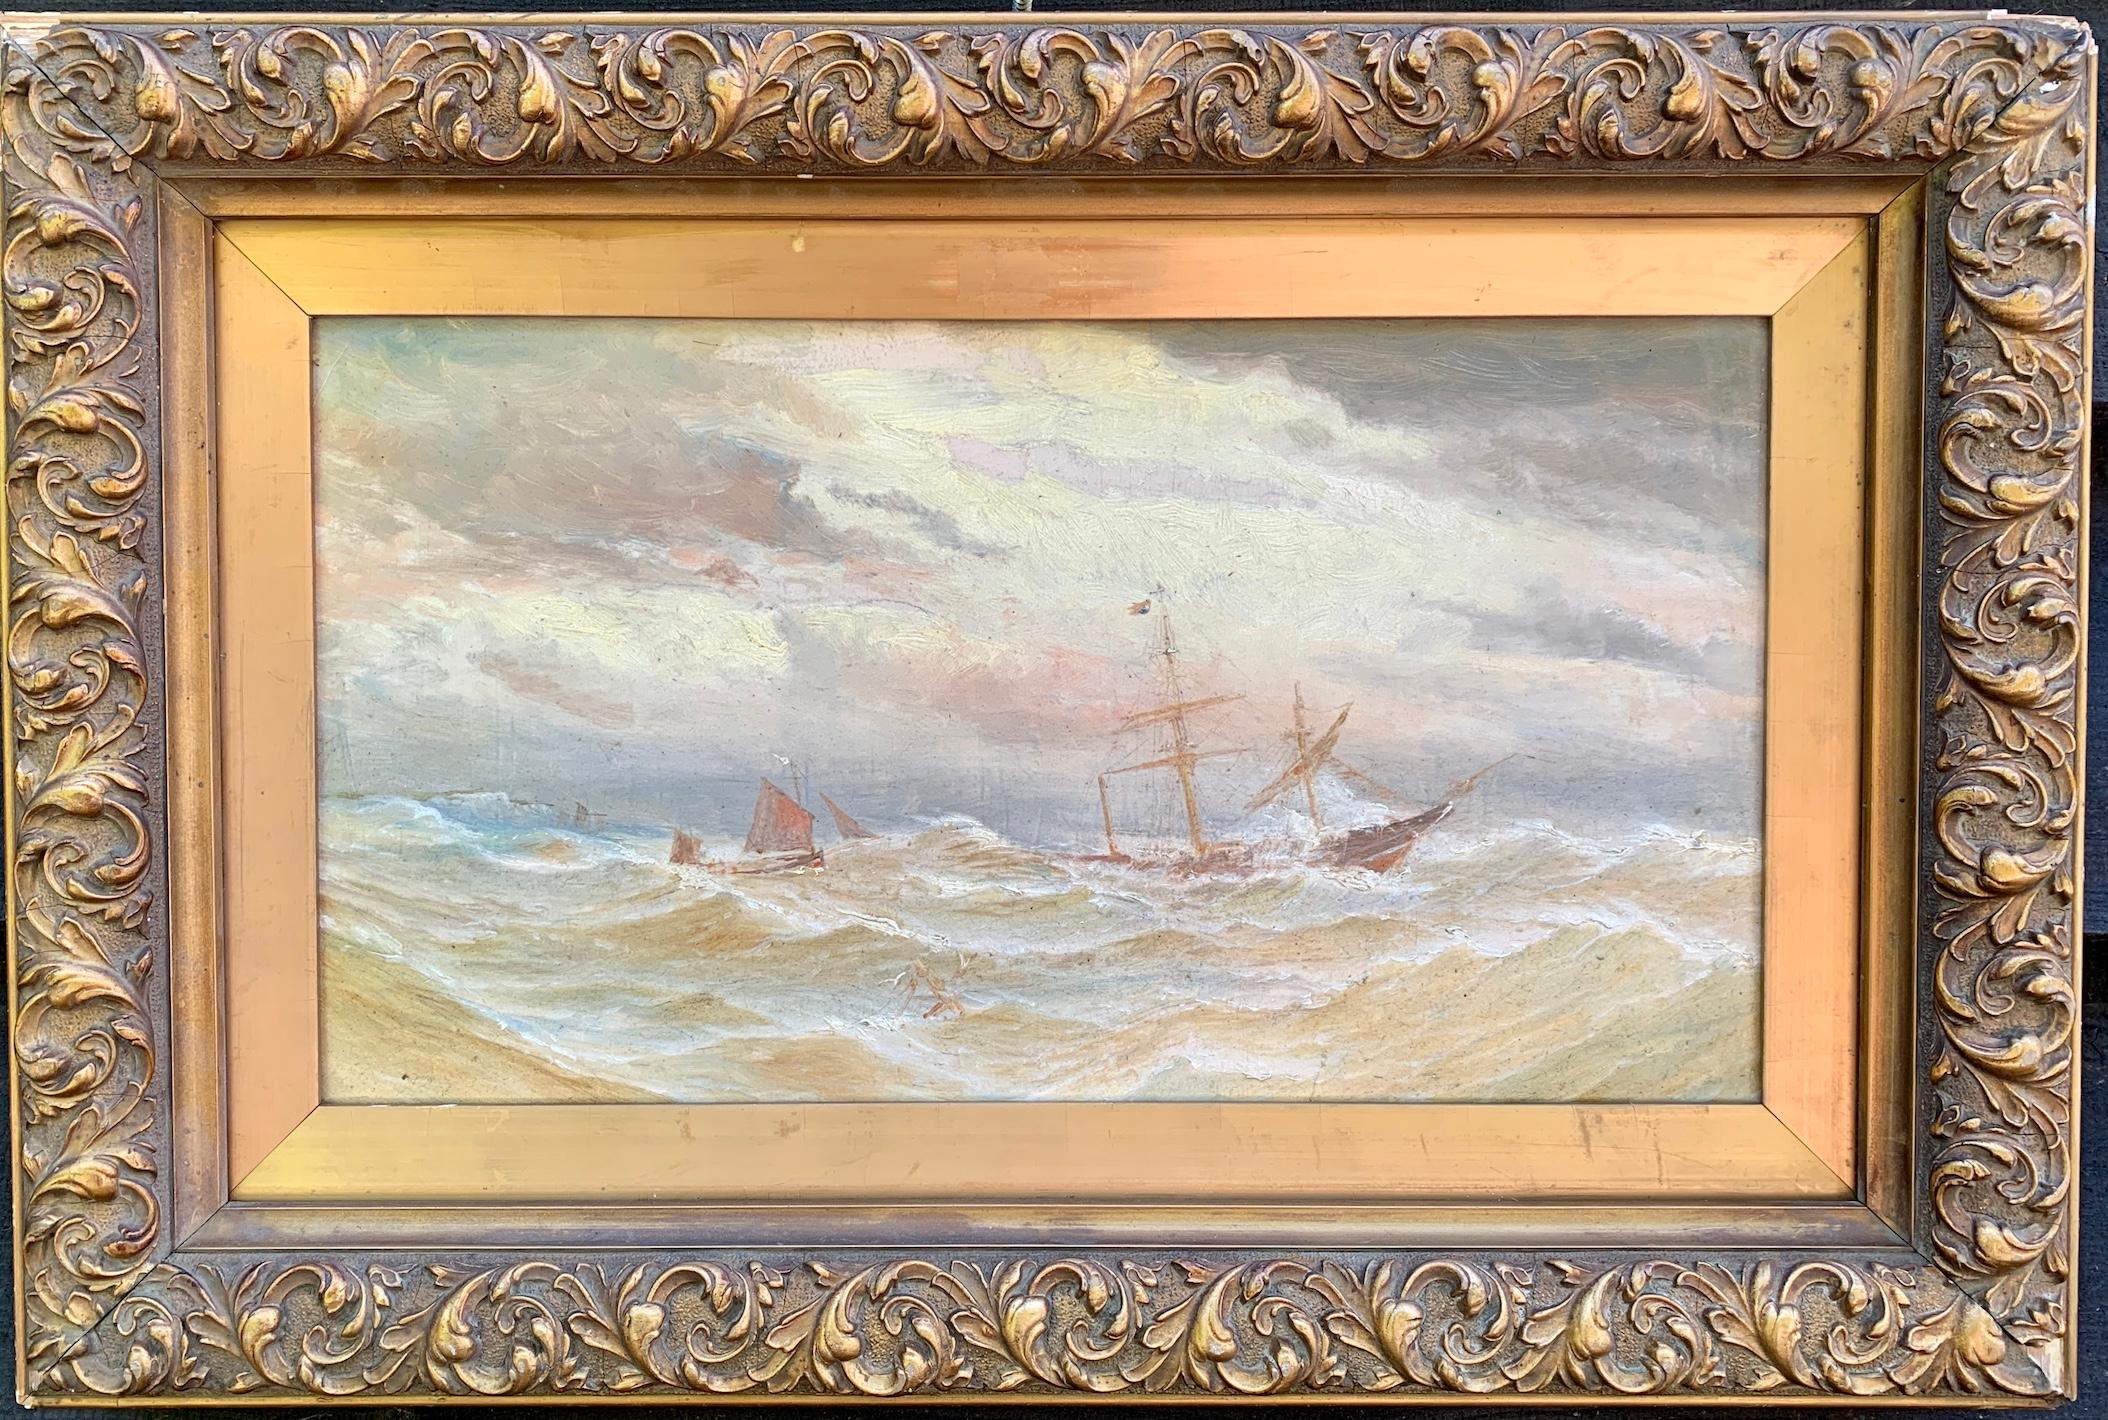 Landscape Painting Bernard Benedict Hemy - École de marine britannique du 19e siècle, navire dans des mers rugueuses, avec un soleil couchant